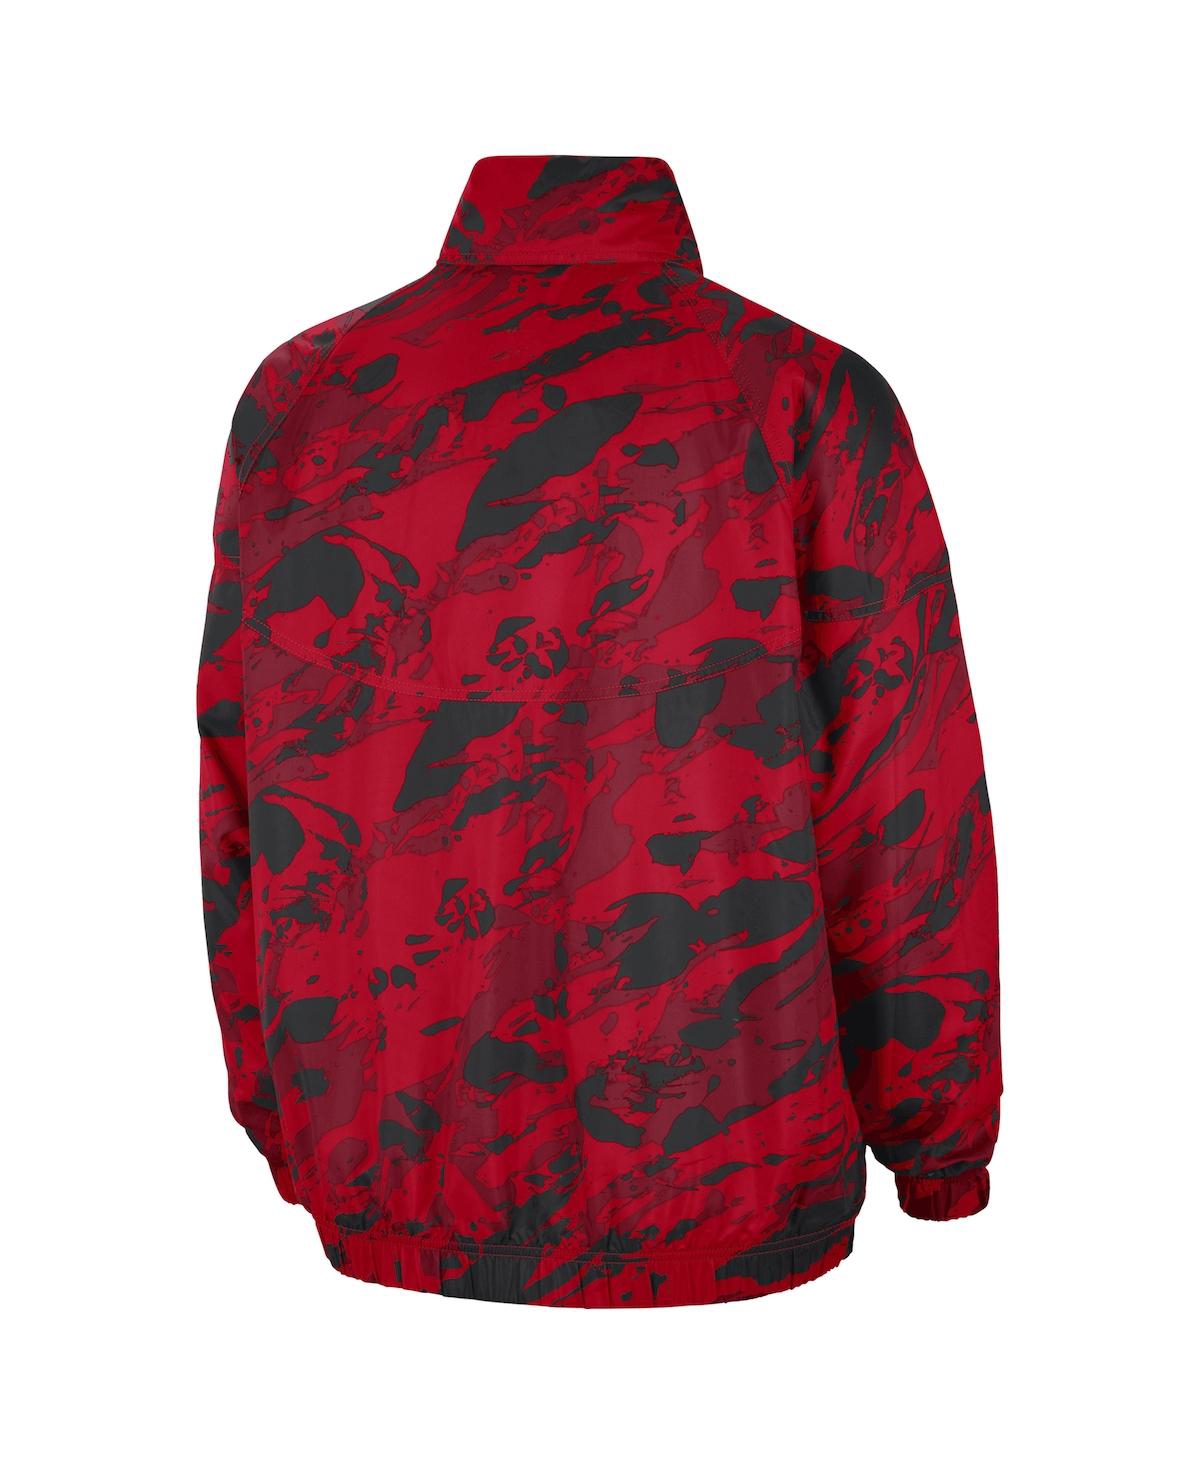 Shop Nike Men's Scarlet Ohio State Buckeyes Anorak Half-zip Jacket